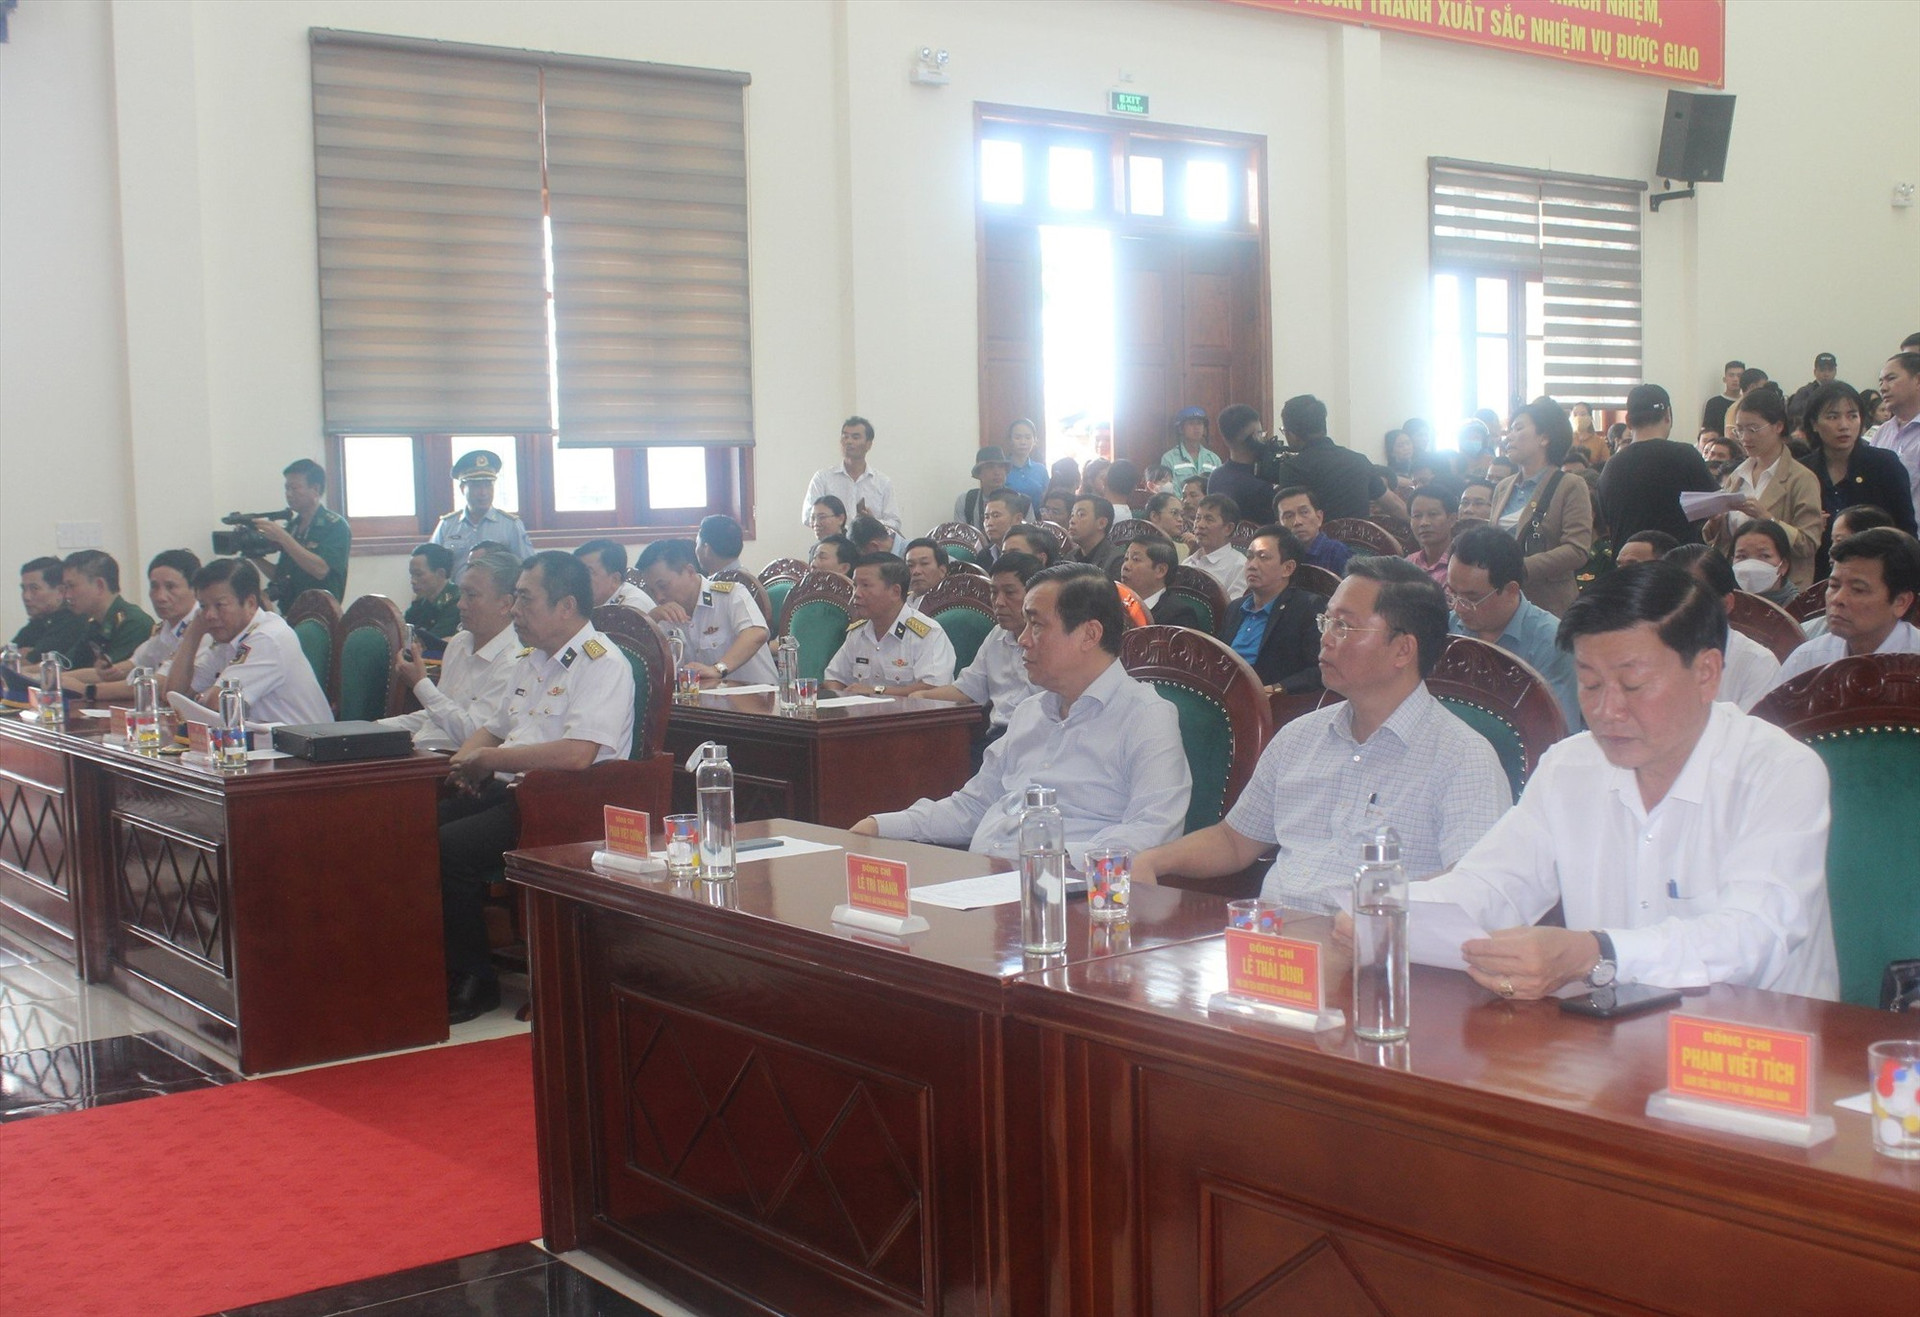 Lãnh đạo Tỉnh ủy, UBND tỉnh, Ủy ban MTTQ Việt Nam tỉnh có mặt tại buổi bàn giao các ngư dân gặp nạn trở về